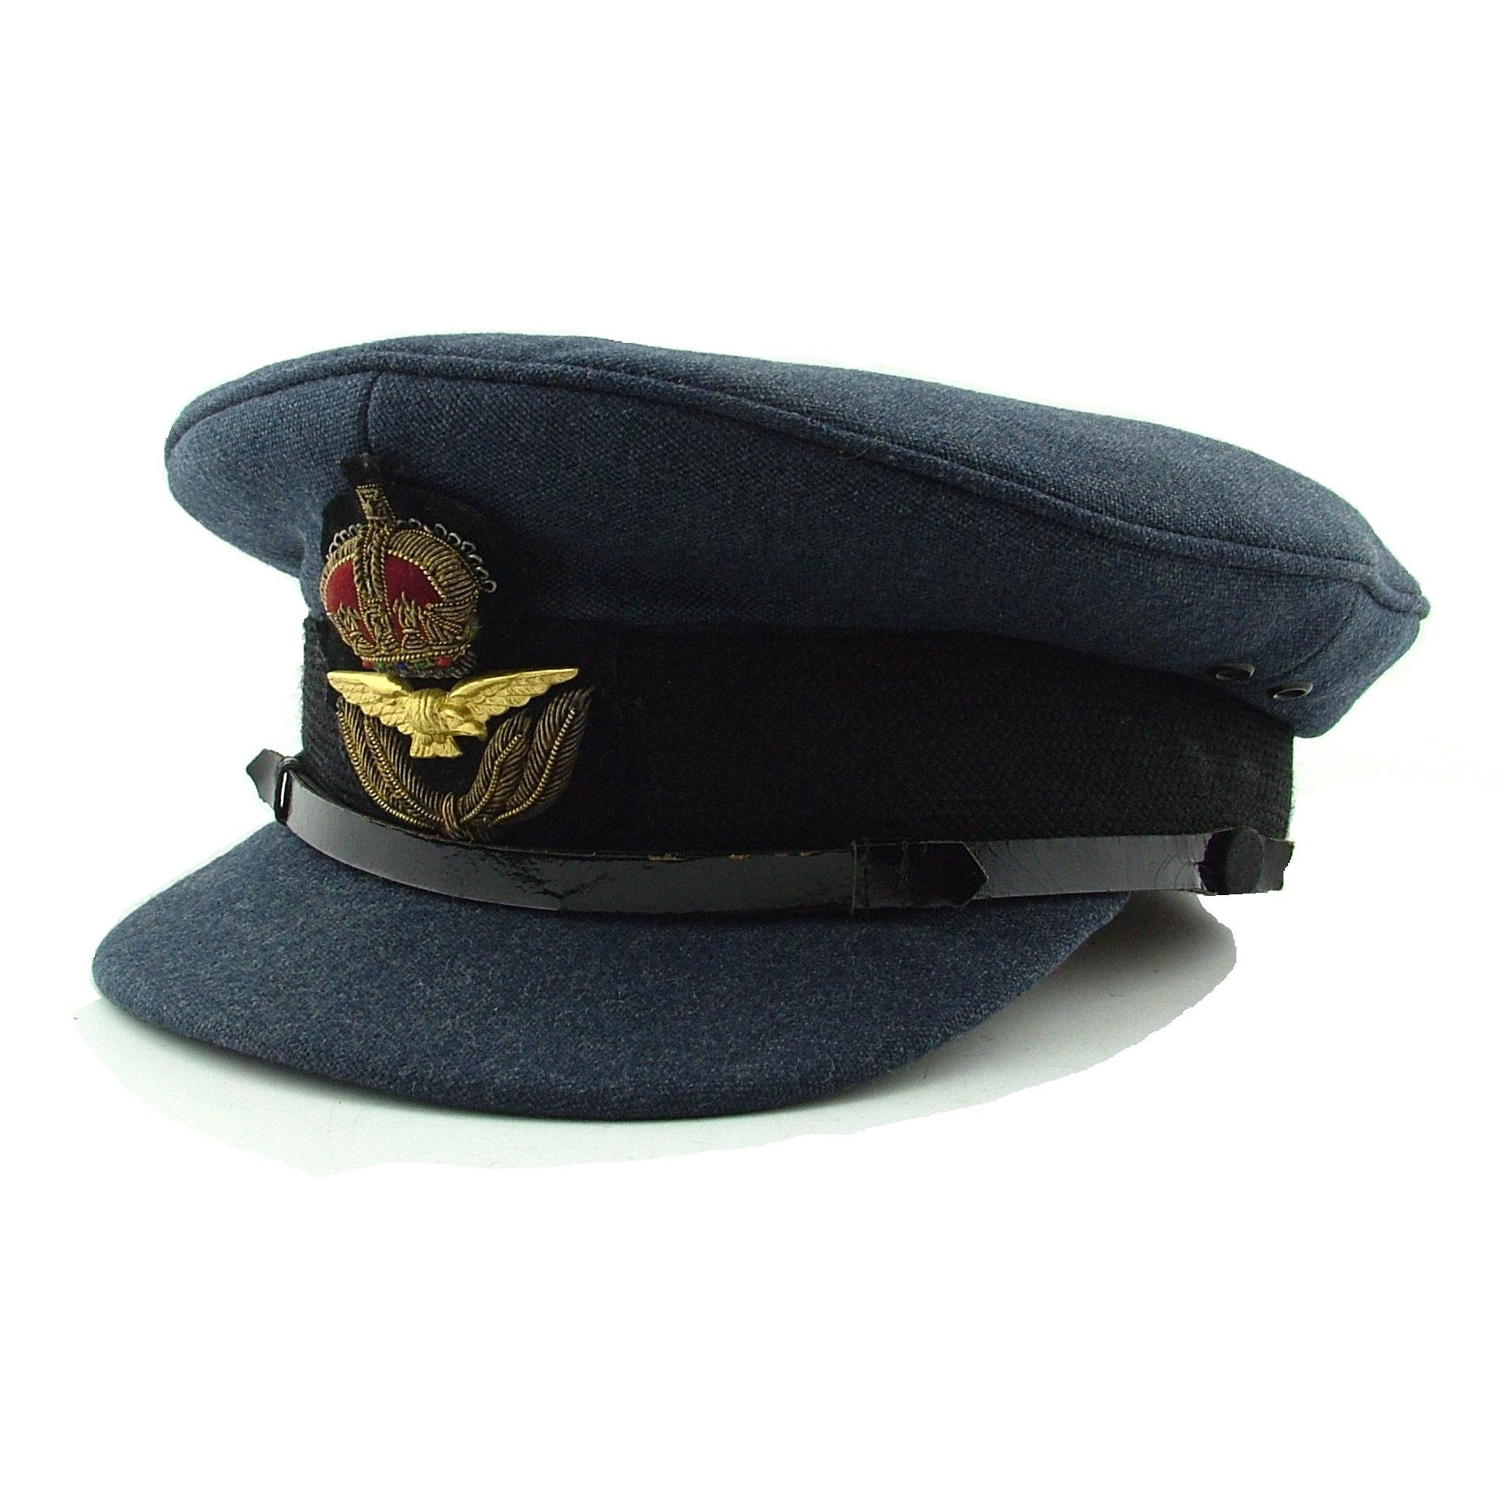 RAF officer rank service dress cap